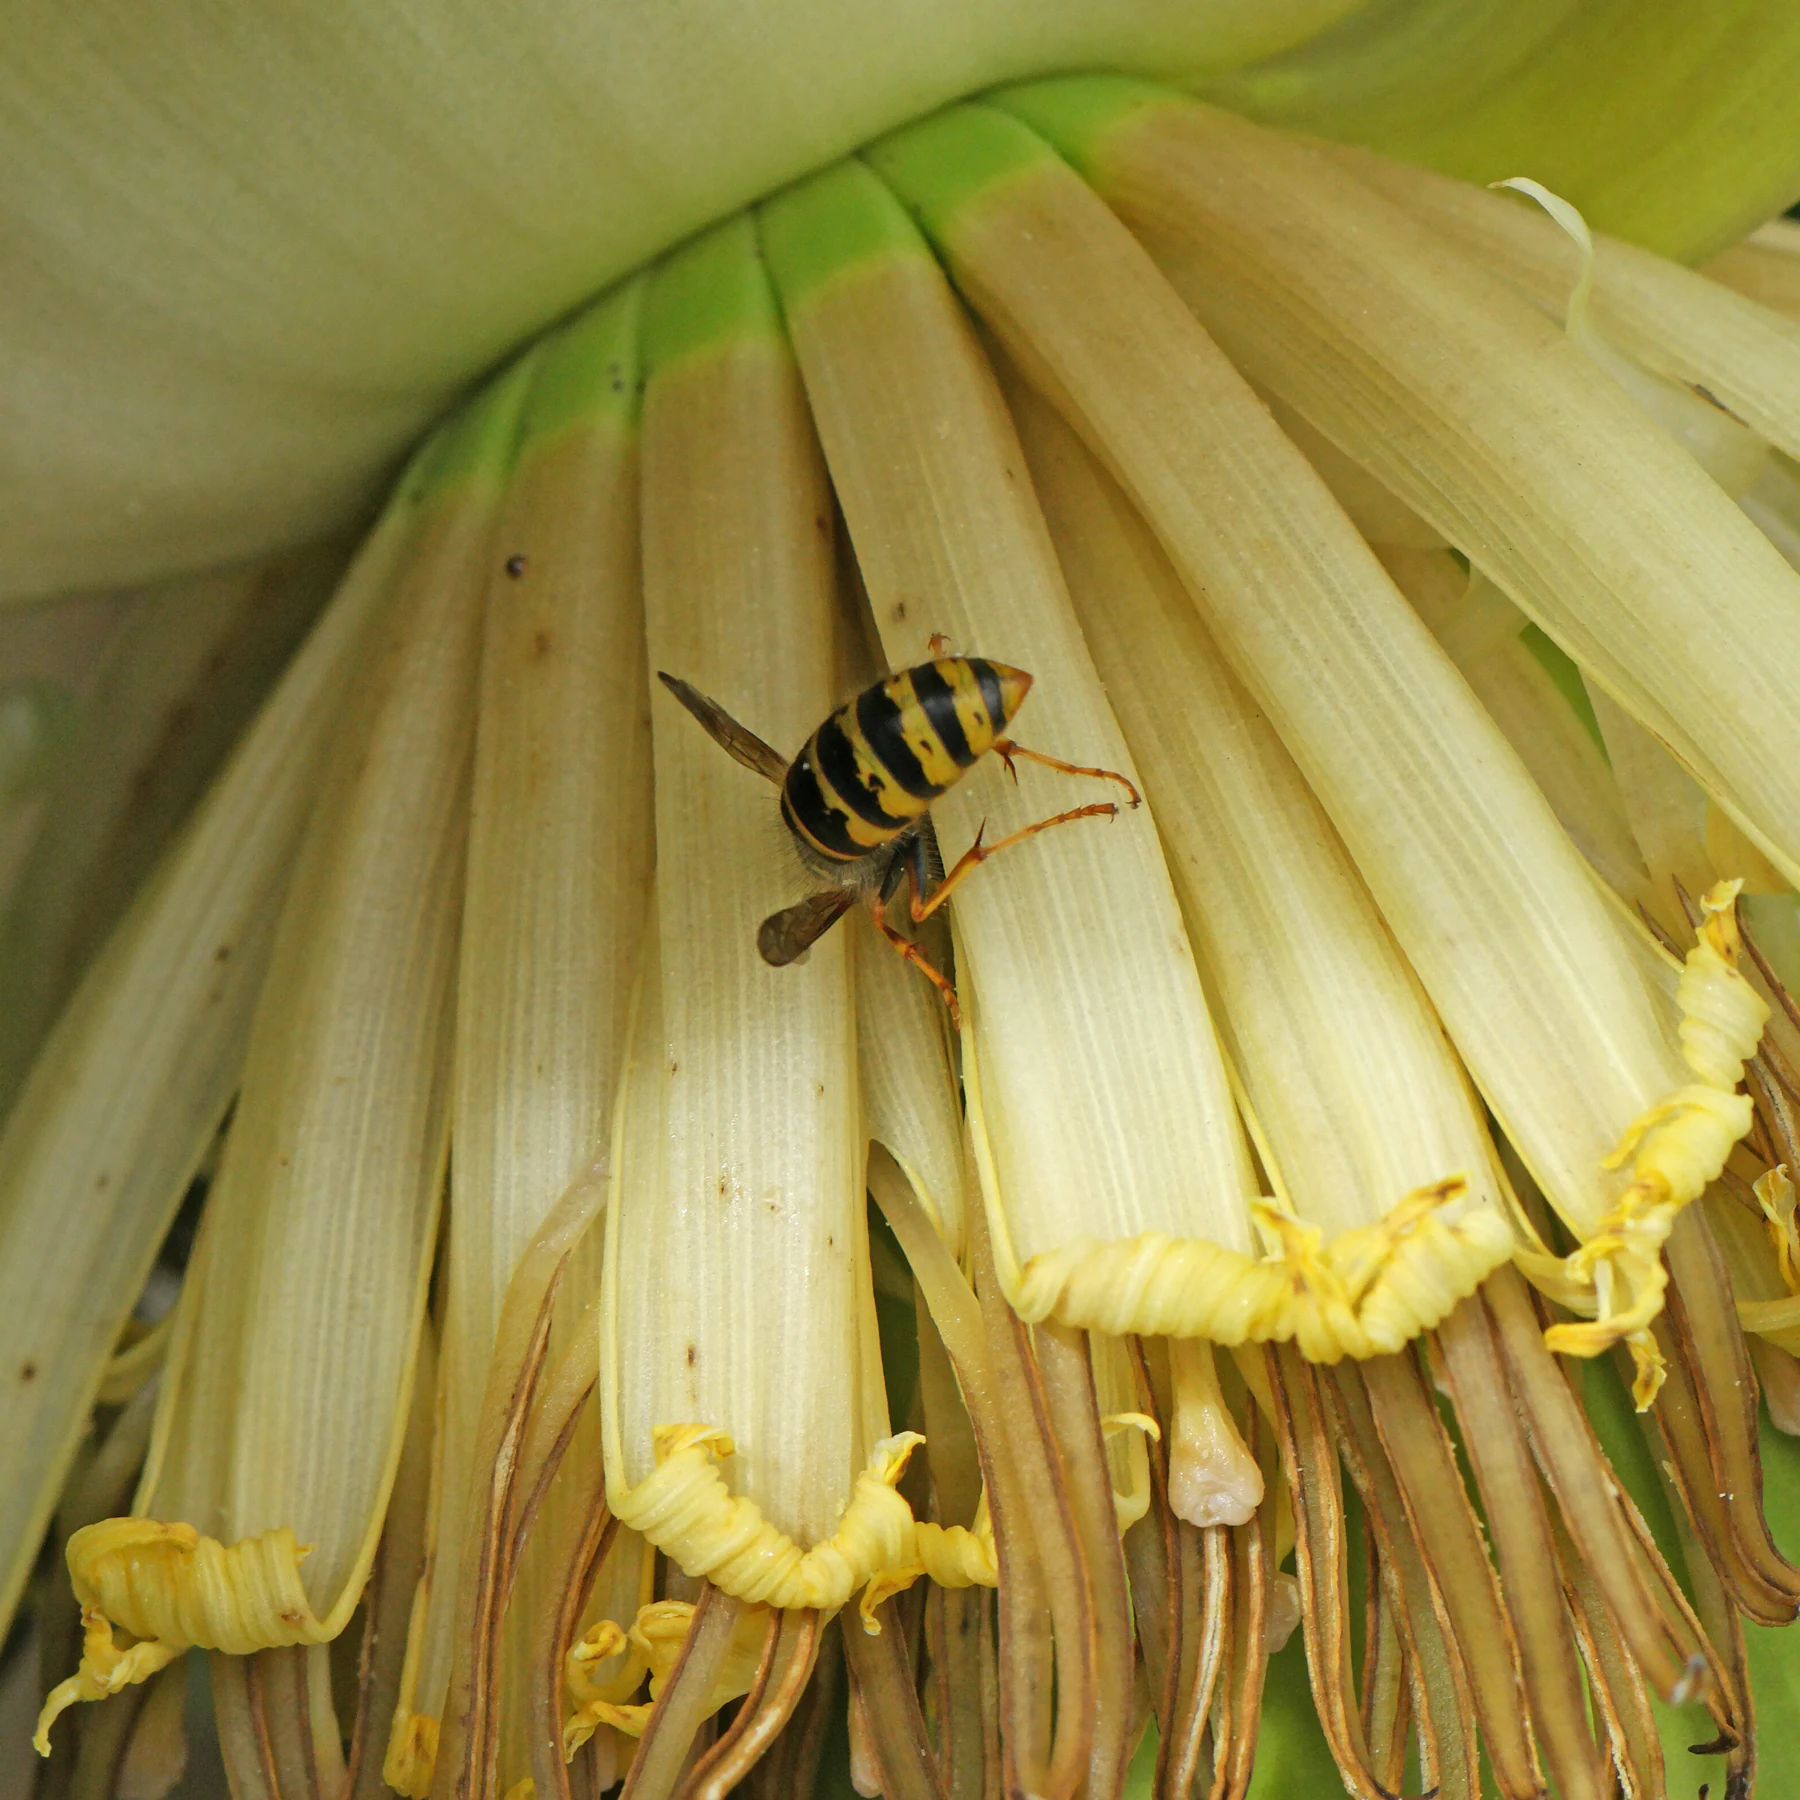 Wespe auf Japanischer Faser Banane